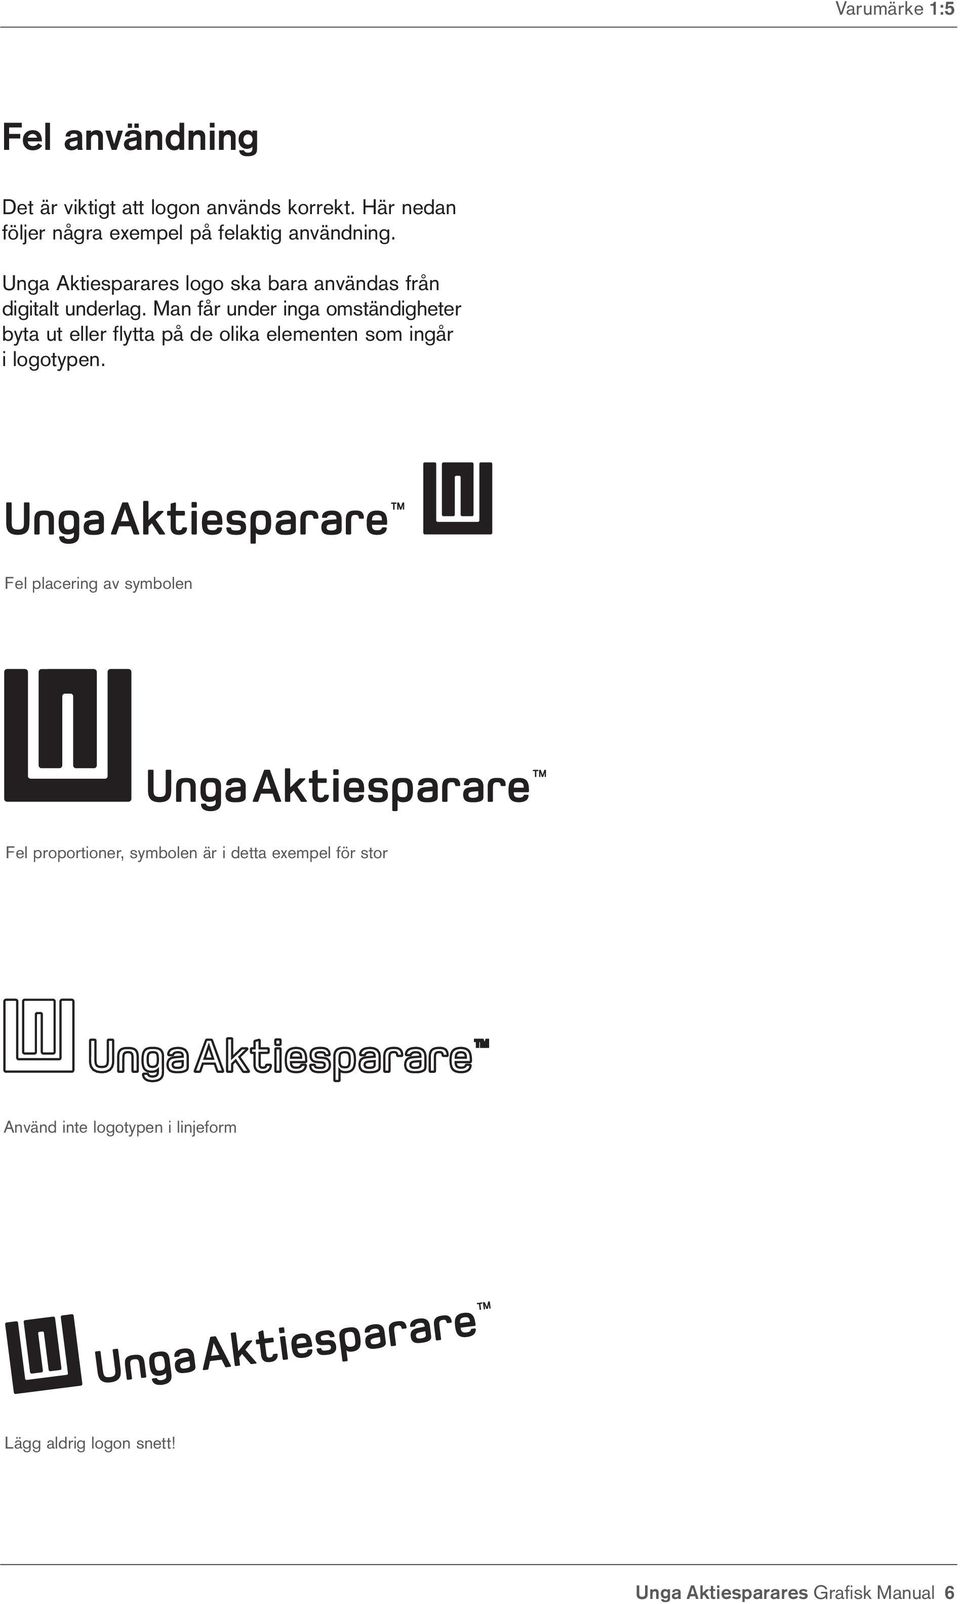 Unga Aktiesparares logo ska bara användas från digitalt underlag.